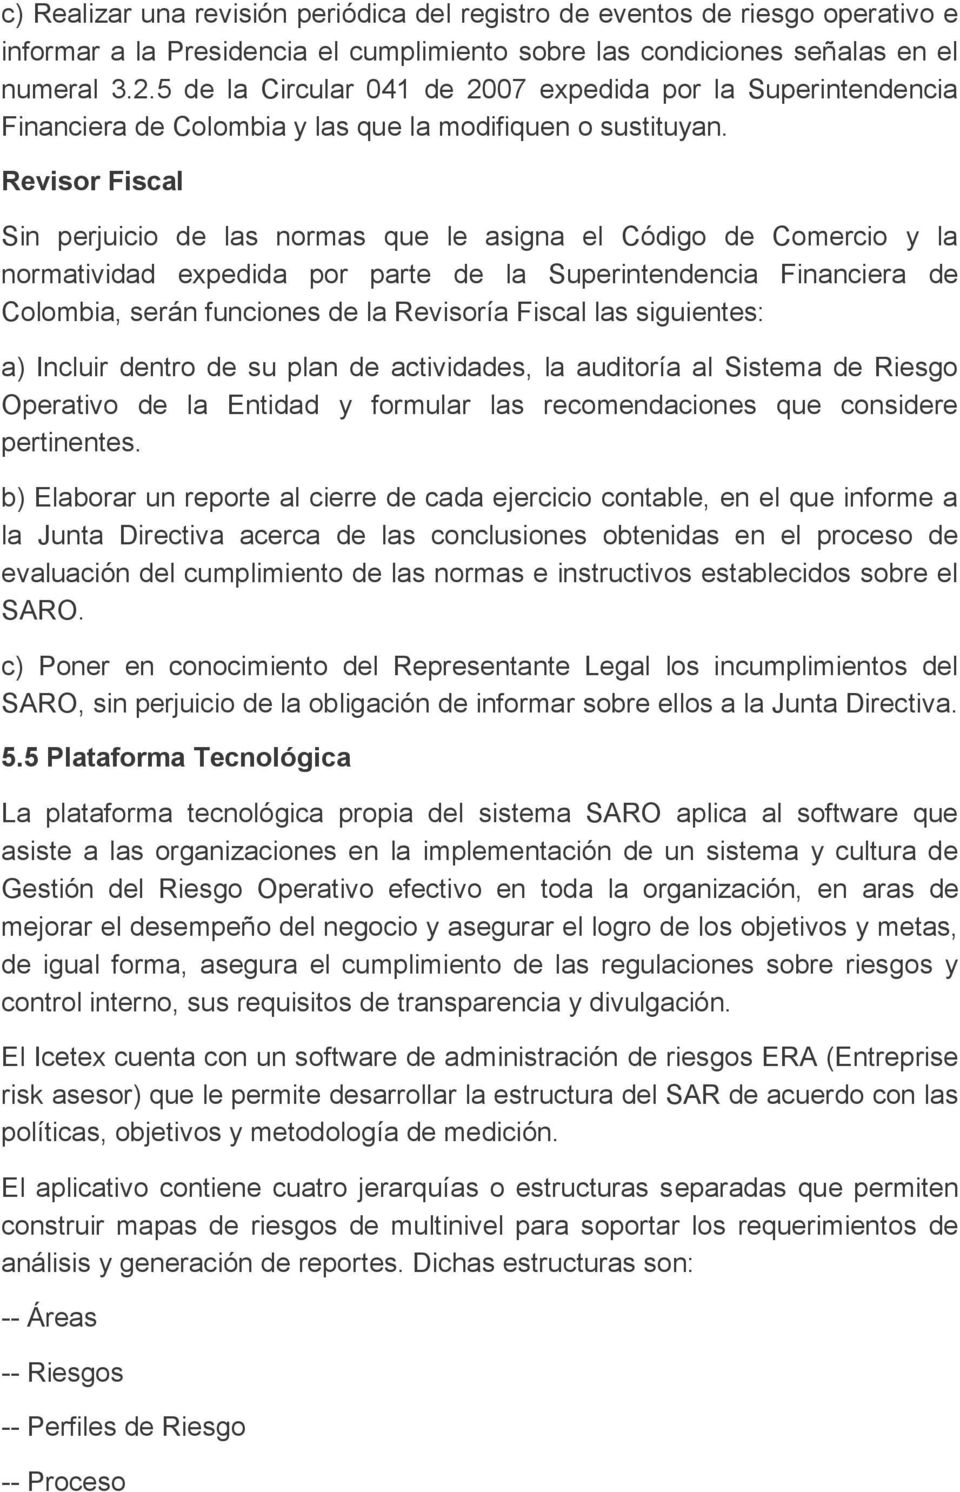 Revisor Fiscal Sin perjuicio las normas que le asigna el Código Comercio y la normatividad expedida por parte la Superintenncia Financiera Colombia, serán funciones la Revisoría Fiscal las